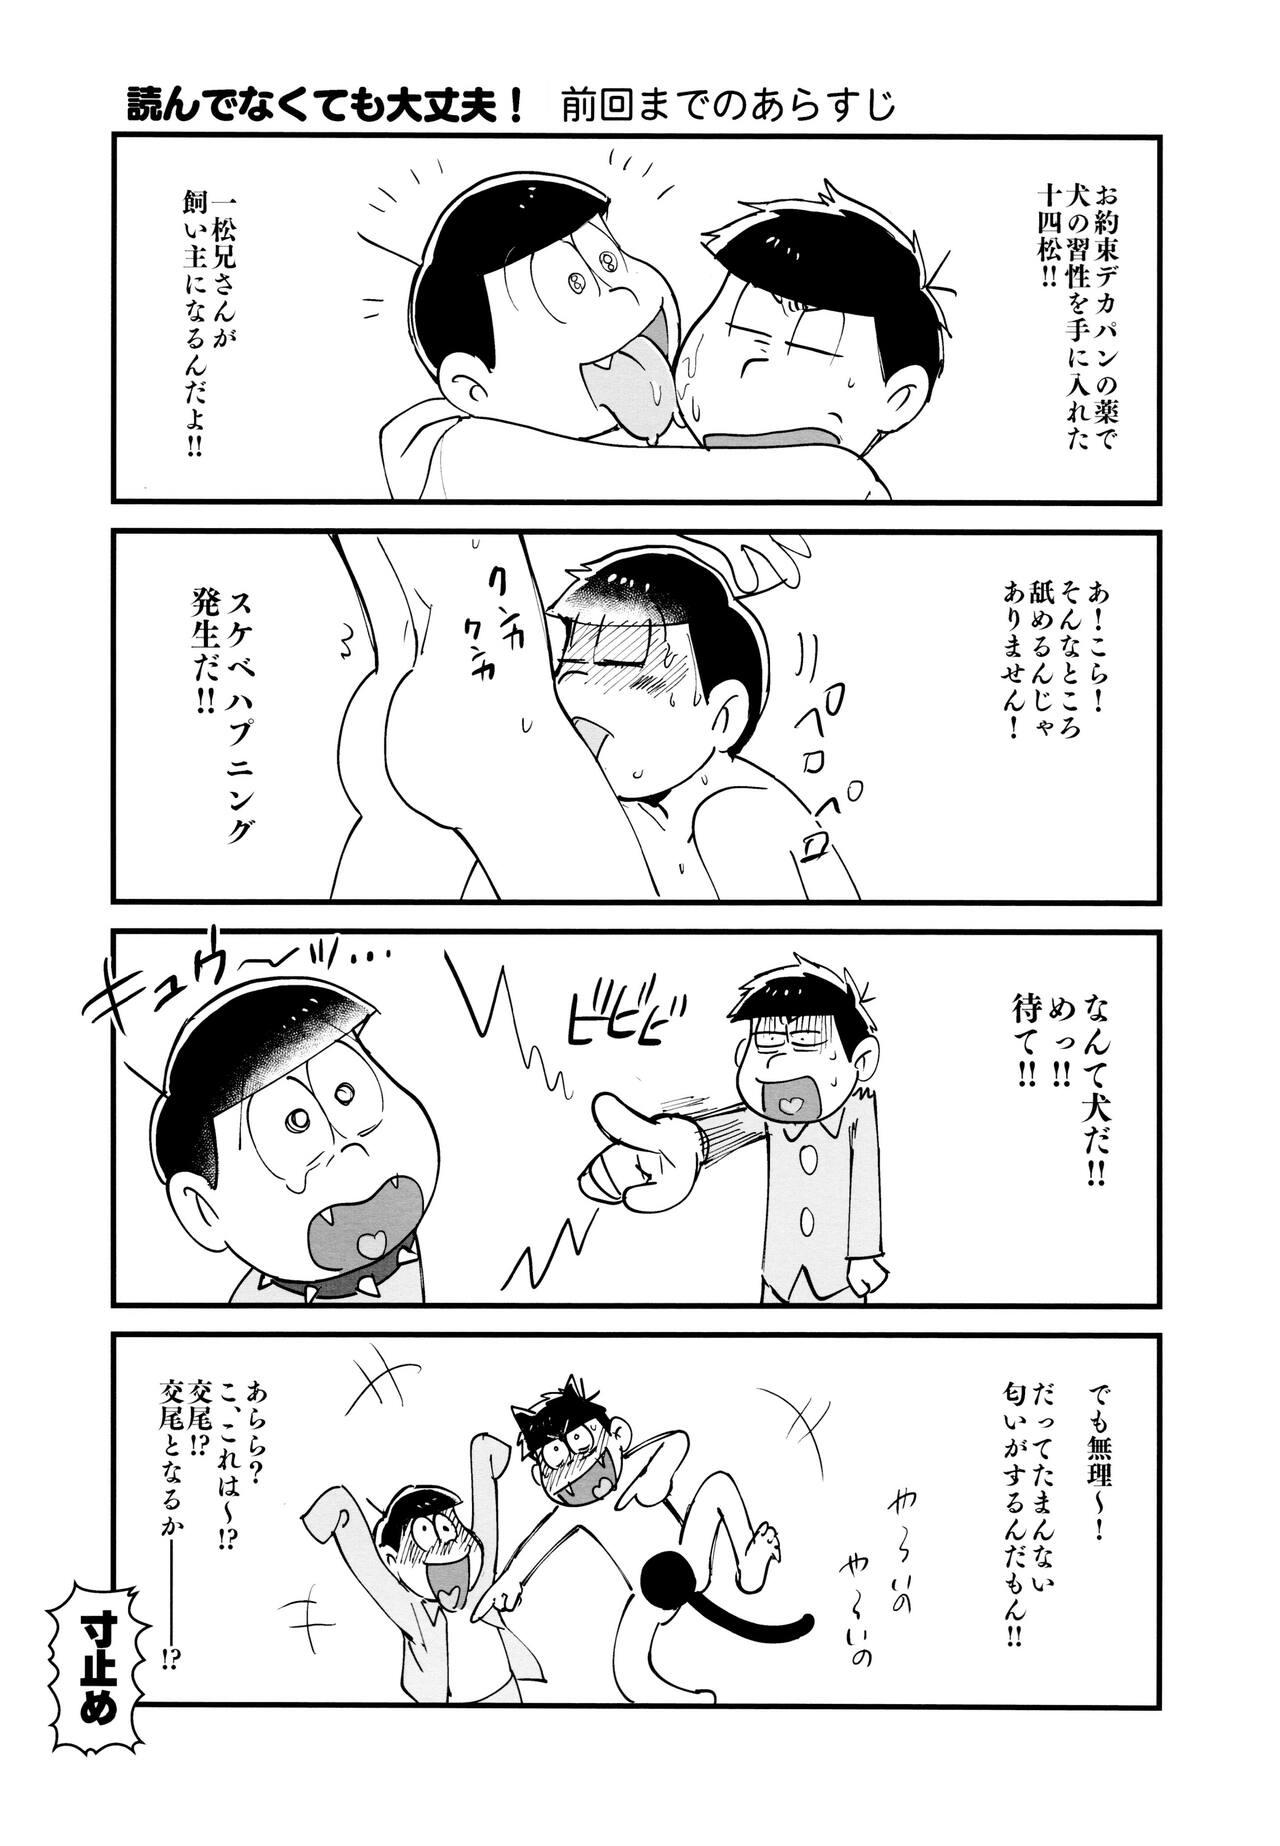 High jacobson error2 - Osomatsu san Tight Ass - Page 4